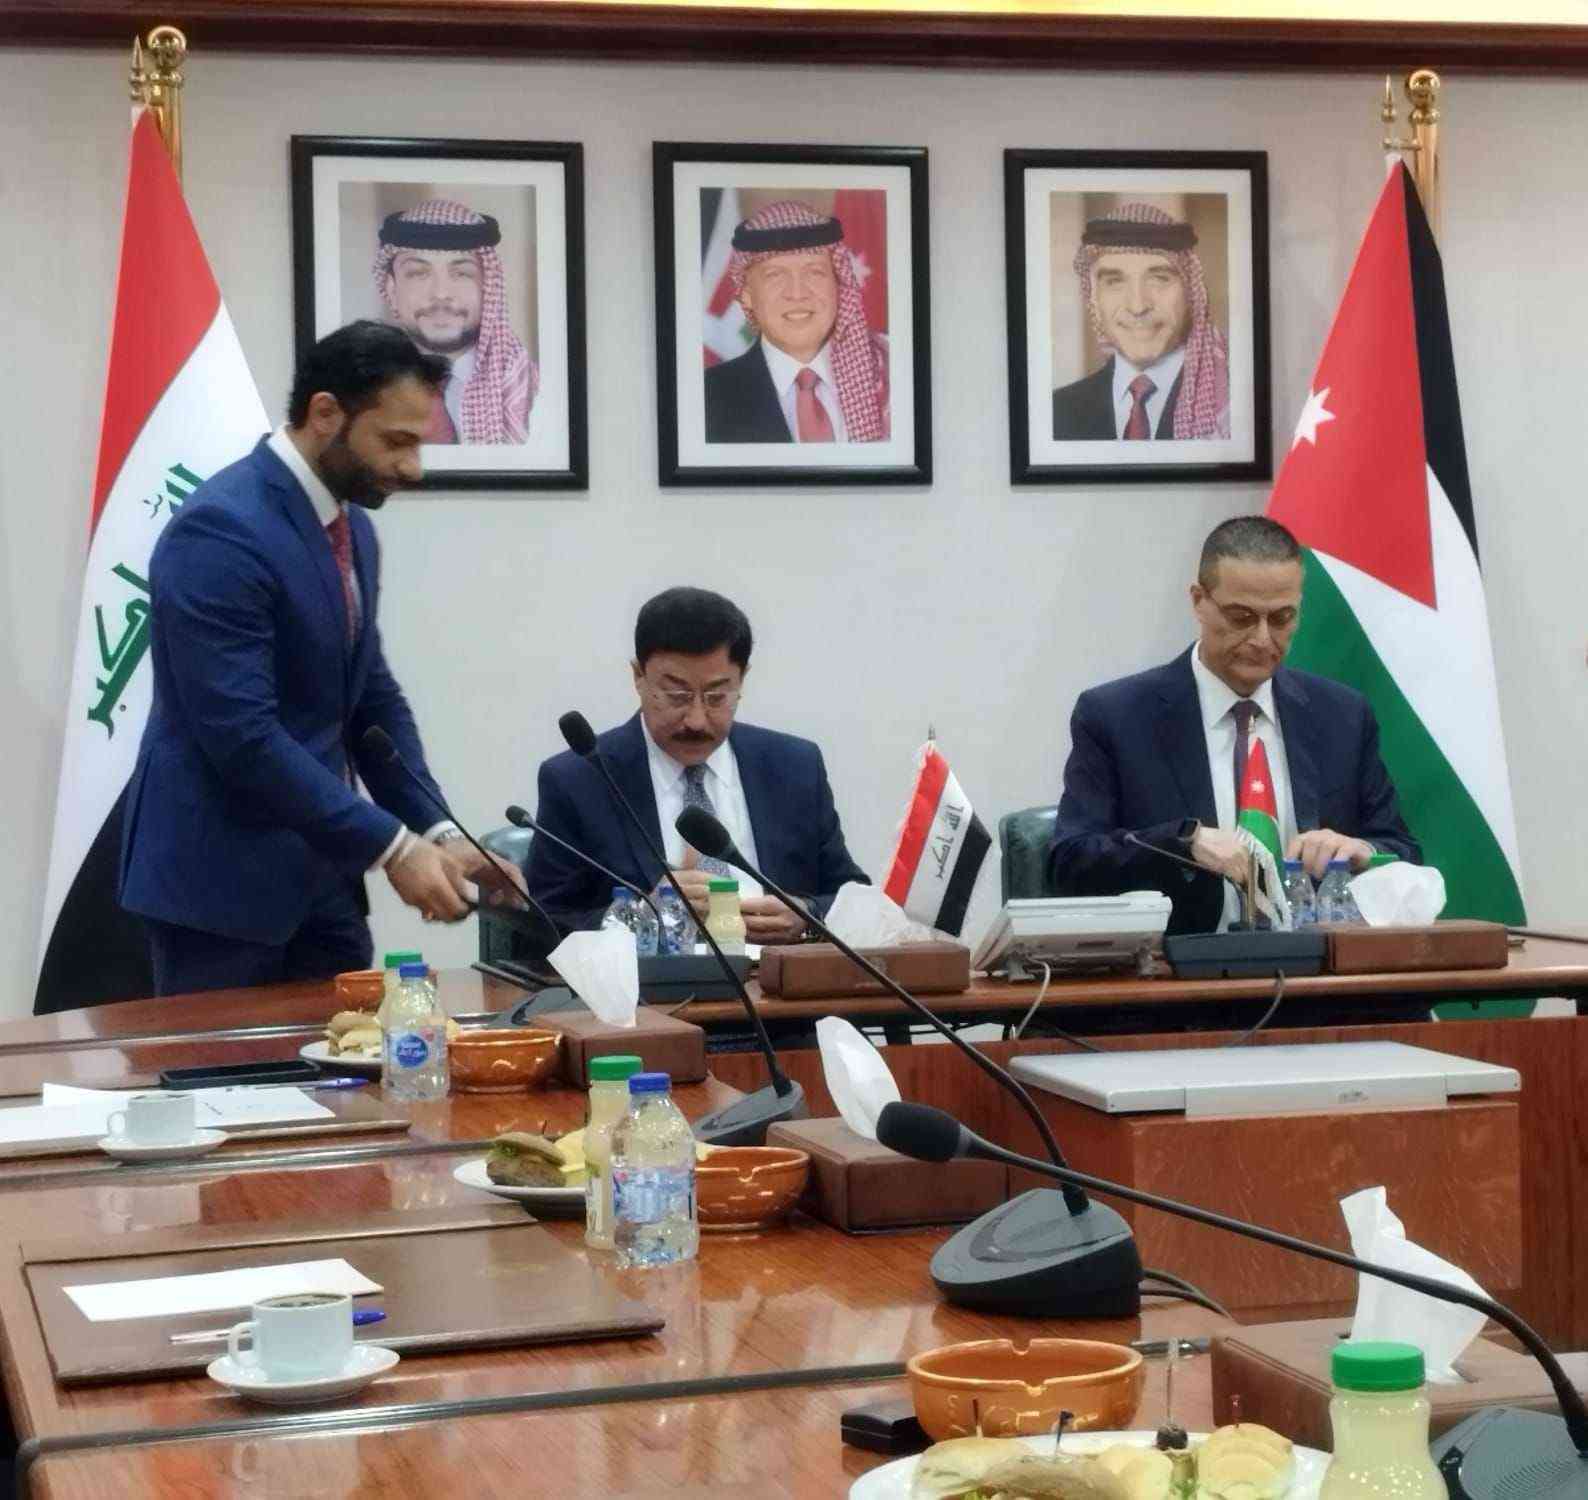 الأردن والعراق يوقعان اتفاقية لتعزيز التعاون المالي والمصرفي